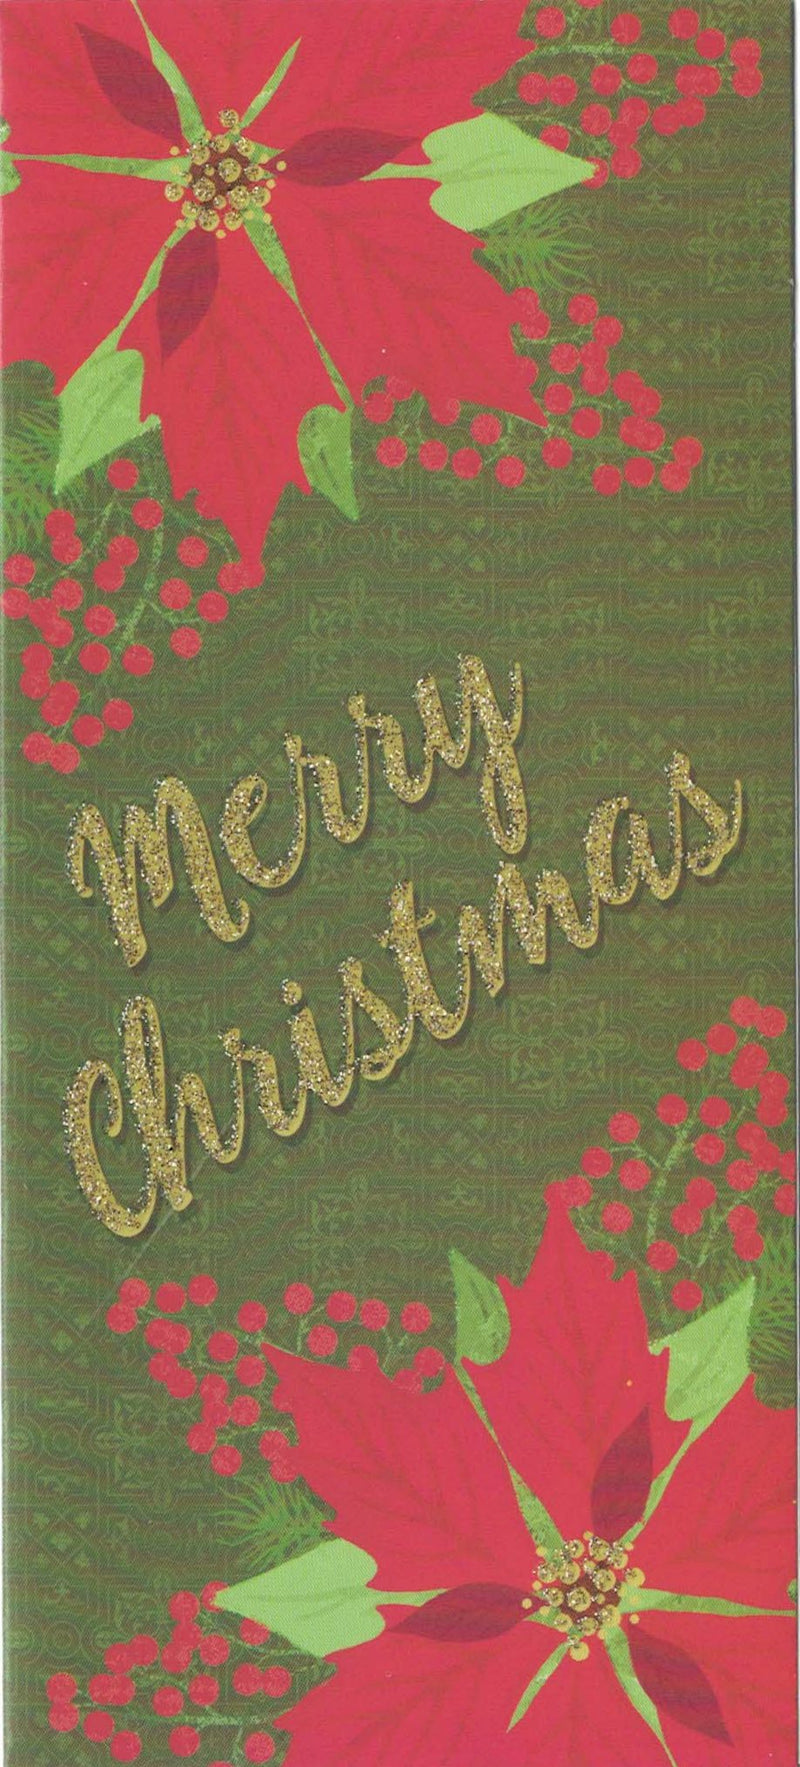 Christmas Money Card Holder - Wreath/Poinsettia - The Country Christmas Loft